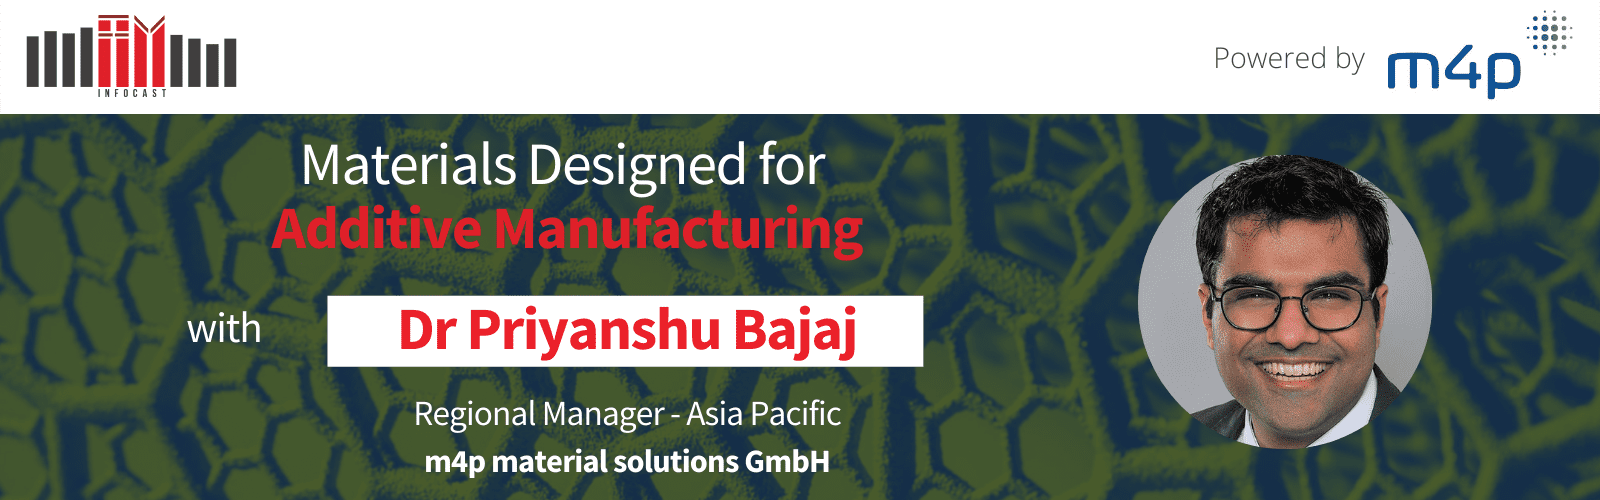 Materials Designed for Additive Manufacturing with Dr Priyanshu Bajaj